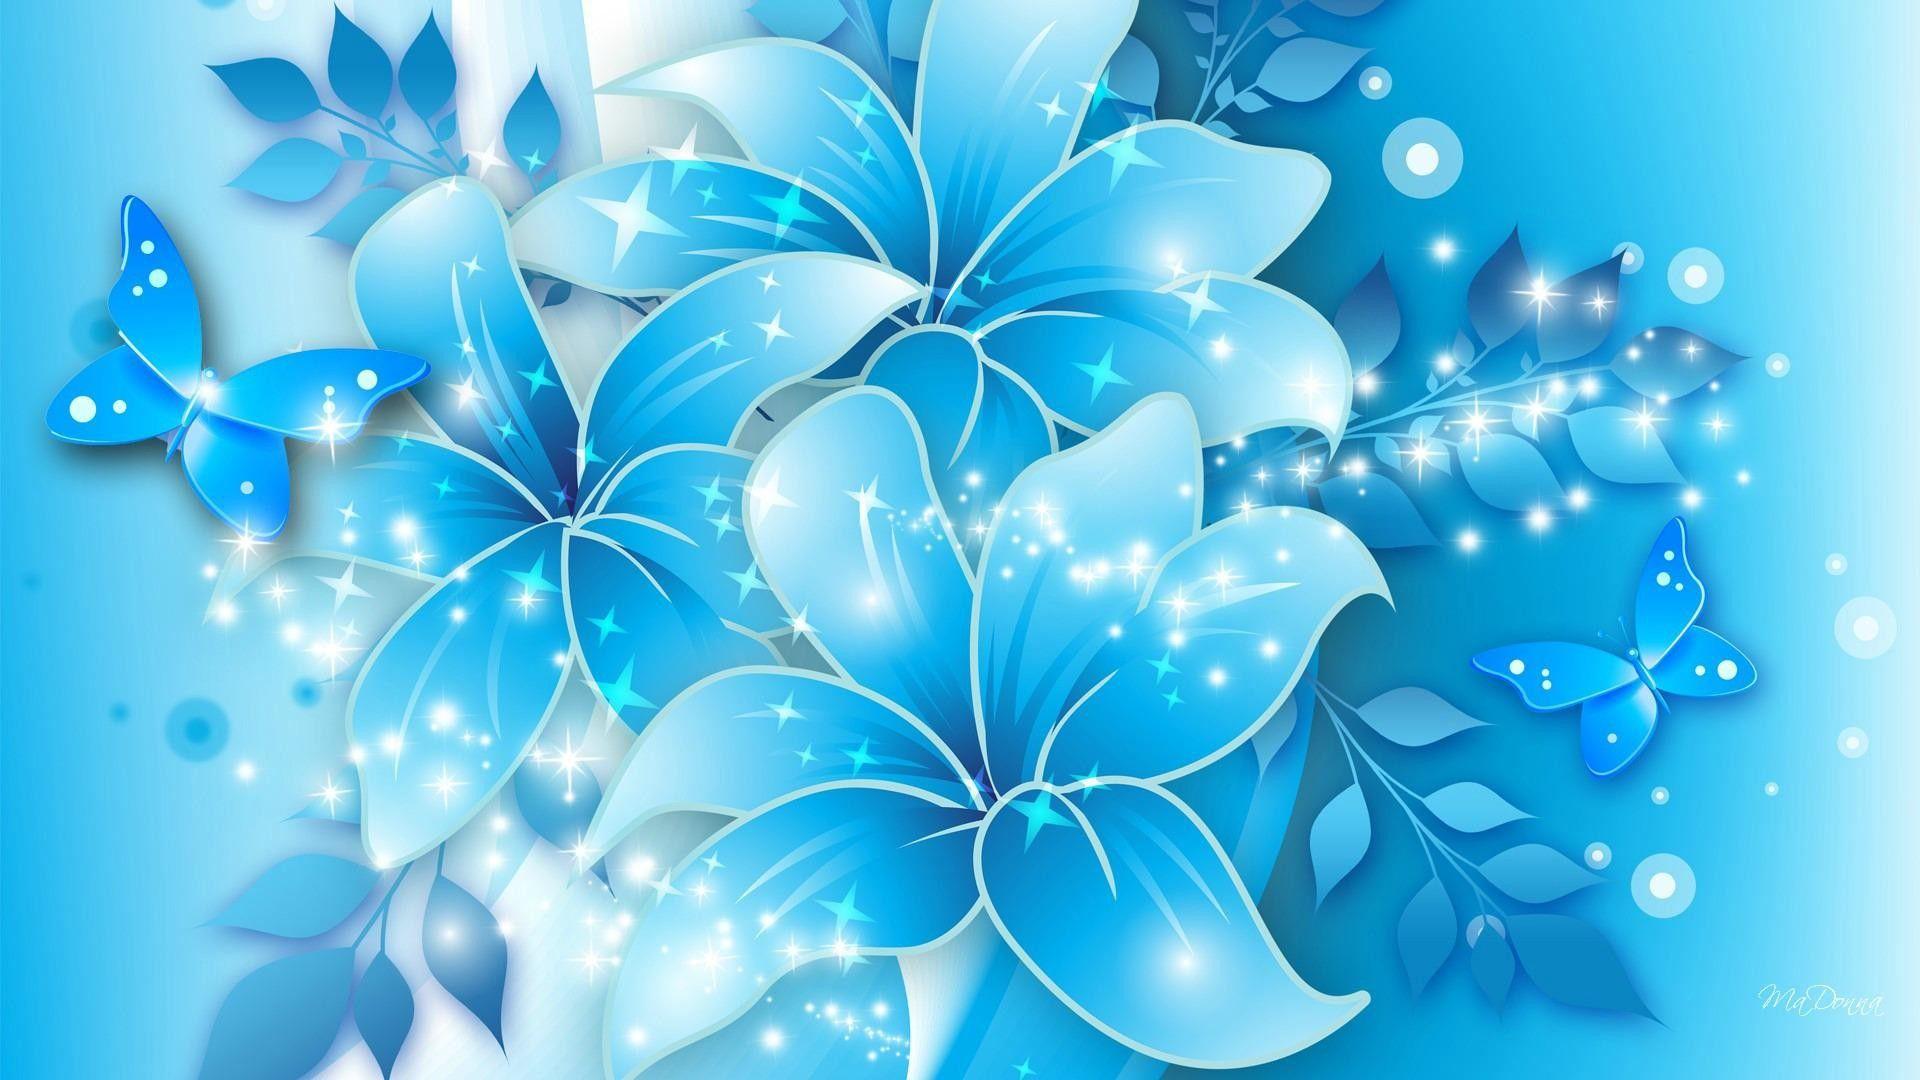 Hình nền hoa xanh dương: Màu hoa xanh dương được ví như màu của bầu trời đêm với những vì sao lấp lánh. Hình nền hoa xanh dương sẽ mang lại cảm giác nhẹ nhàng, lãng mạn và tươi mới cho màn hình của bạn. Hãy cùng trải nghiệm vẻ đẹp của hình nền này.